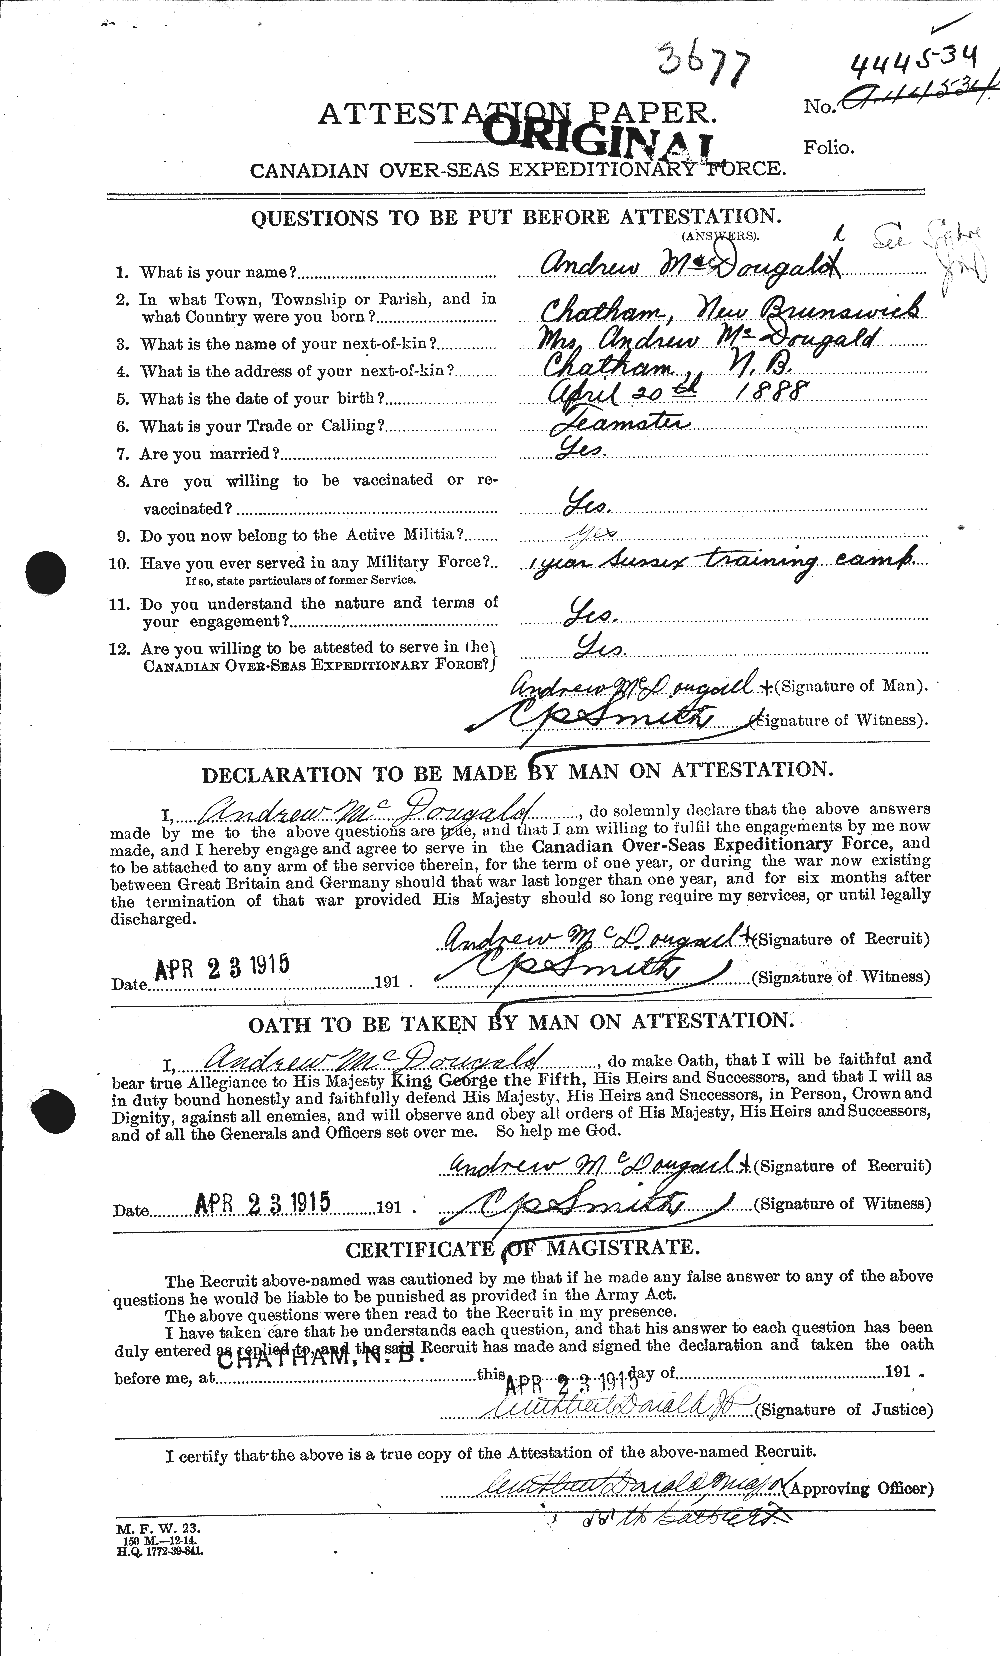 Dossiers du Personnel de la Première Guerre mondiale - CEC 525227a